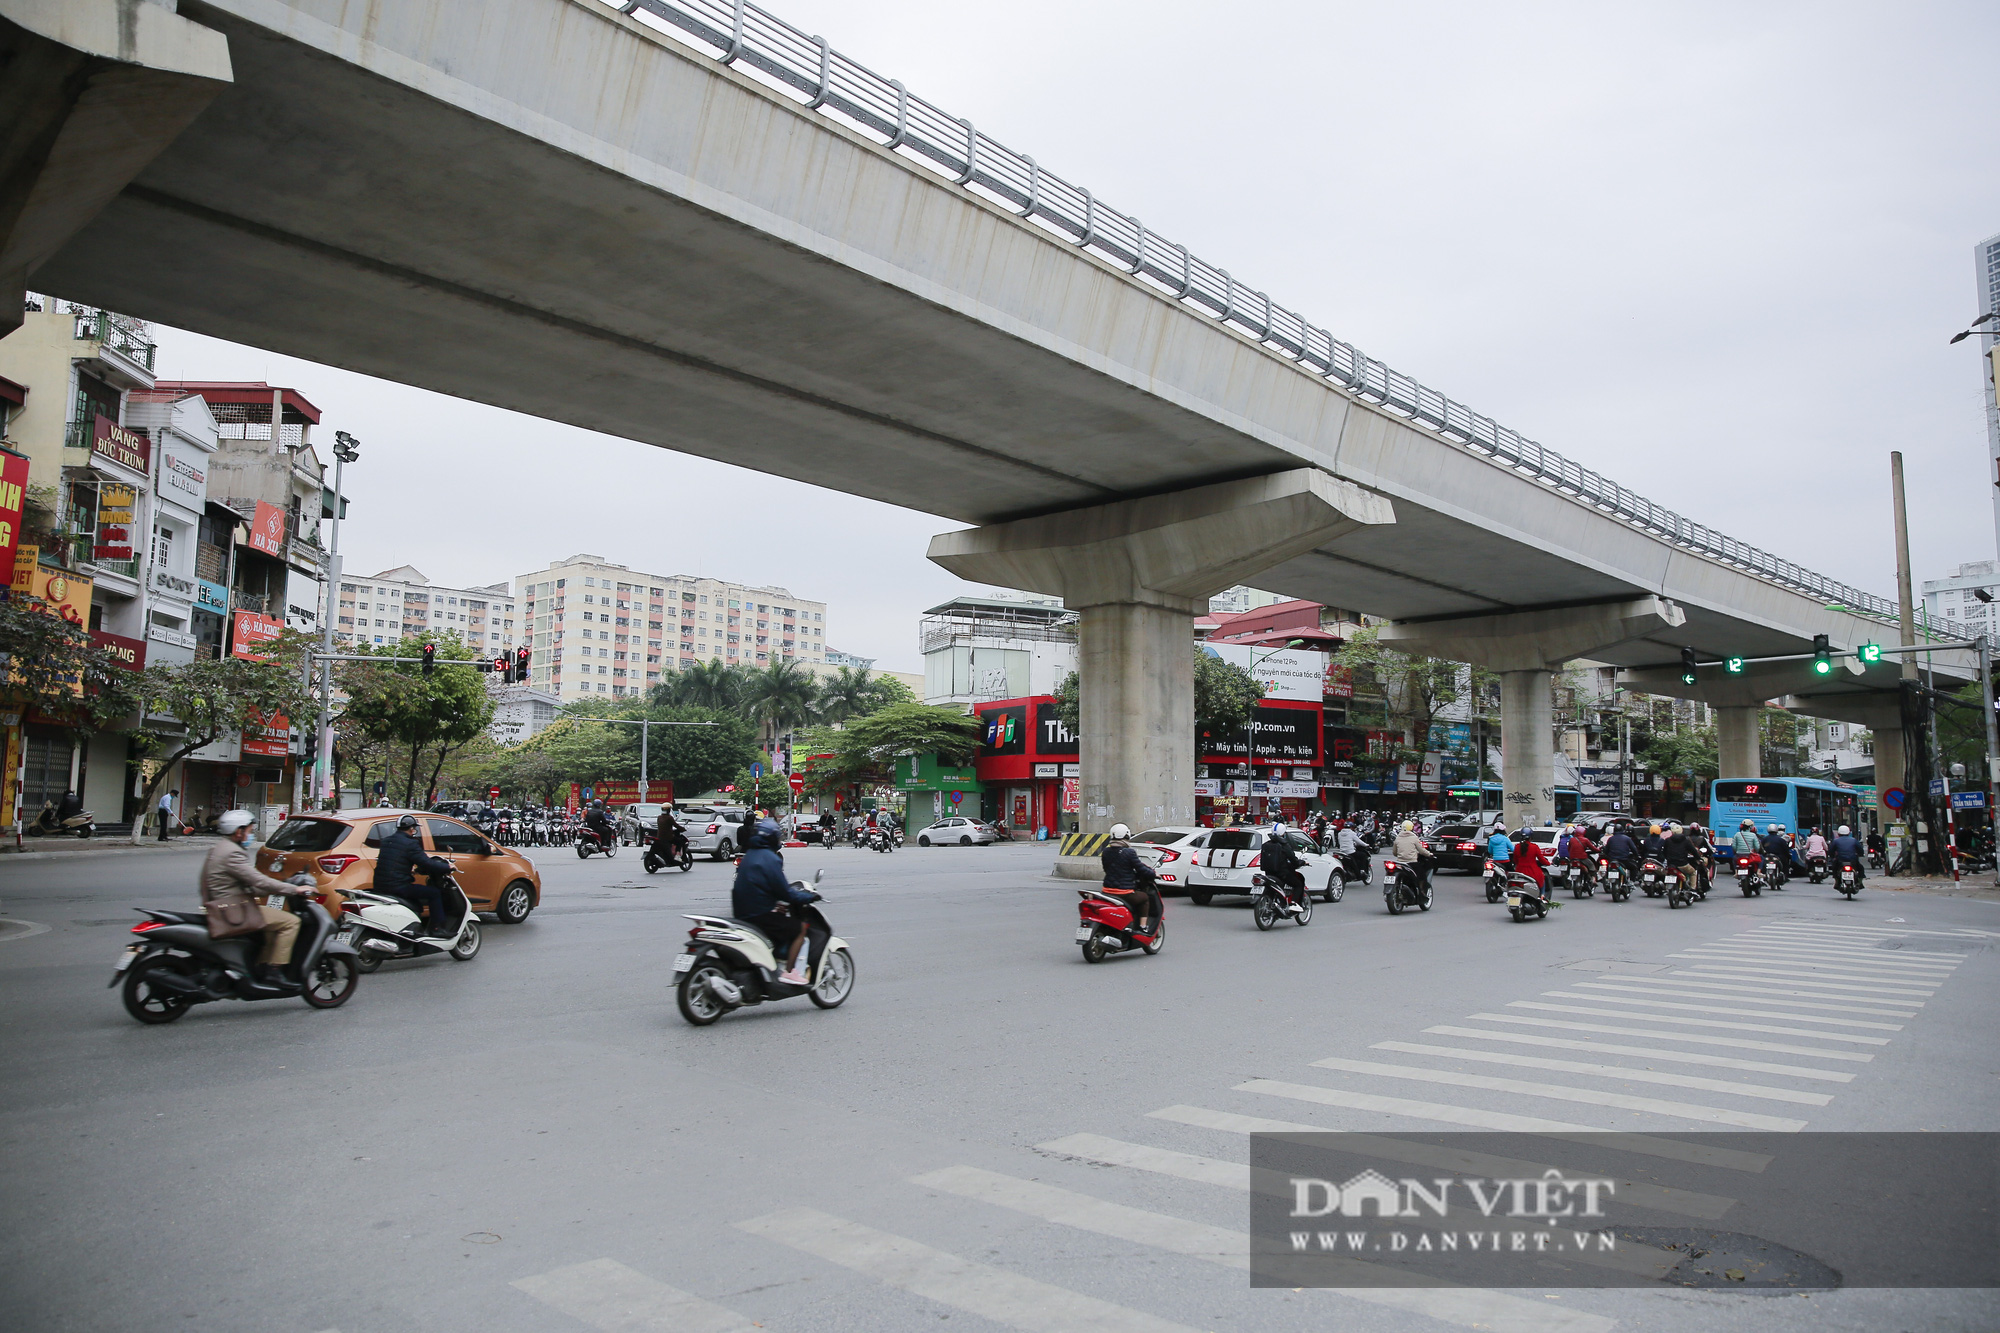 Bất ngờ giao thông Hà Nội trong ngày đầu tiên đi làm sau kỳ nghỉ Tết Nguyên đán - Ảnh 5.